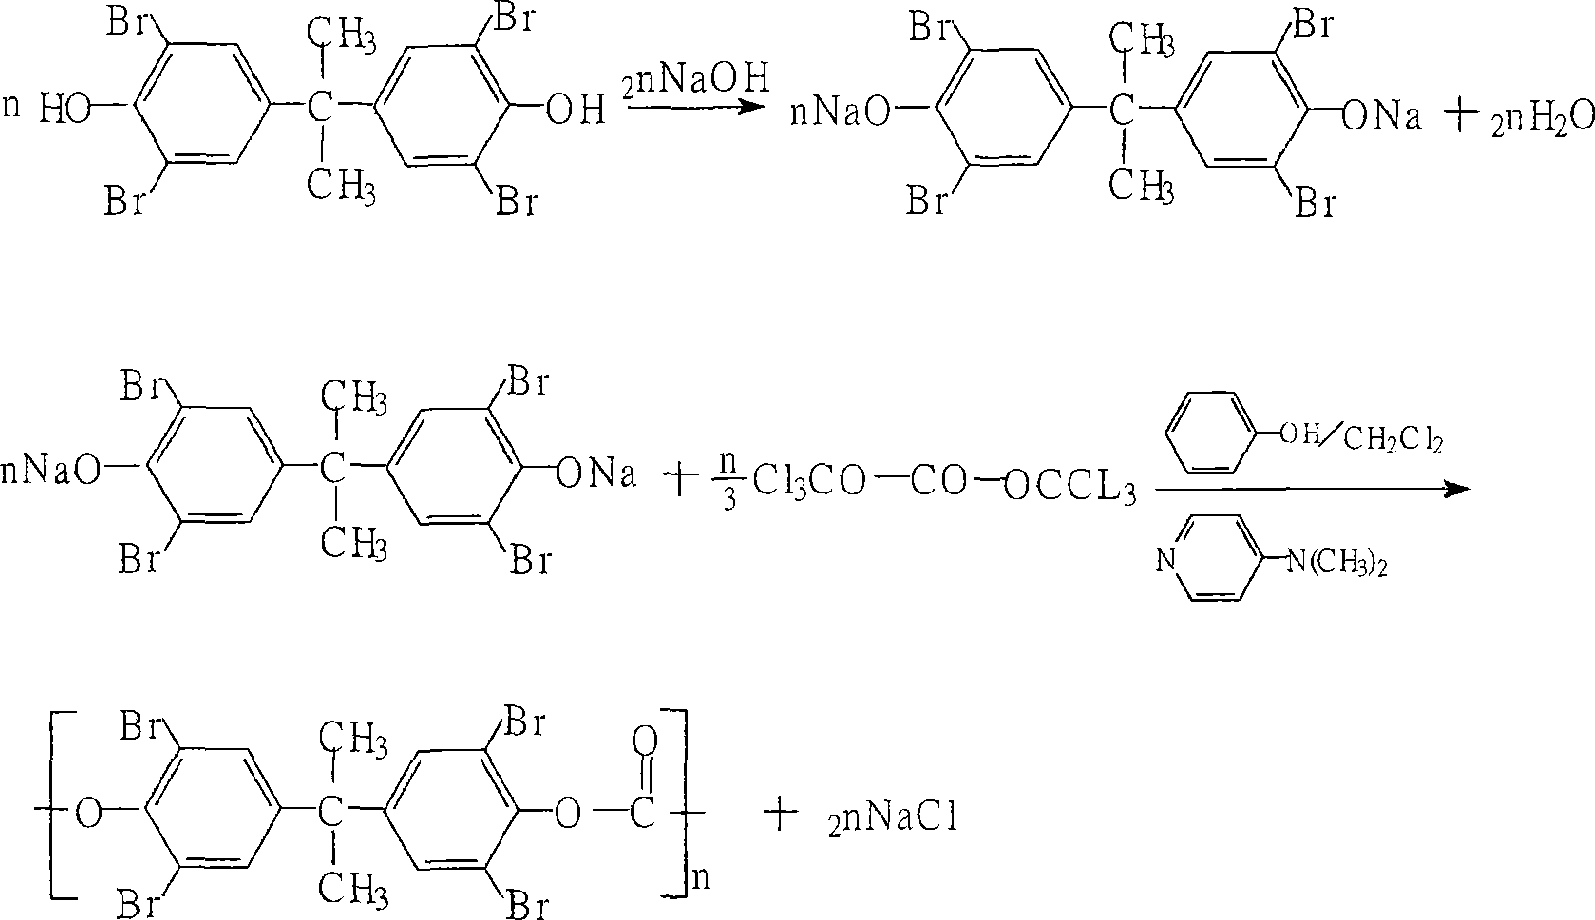 Method for preparing tetrabromo-bisphenol A polycarbonate